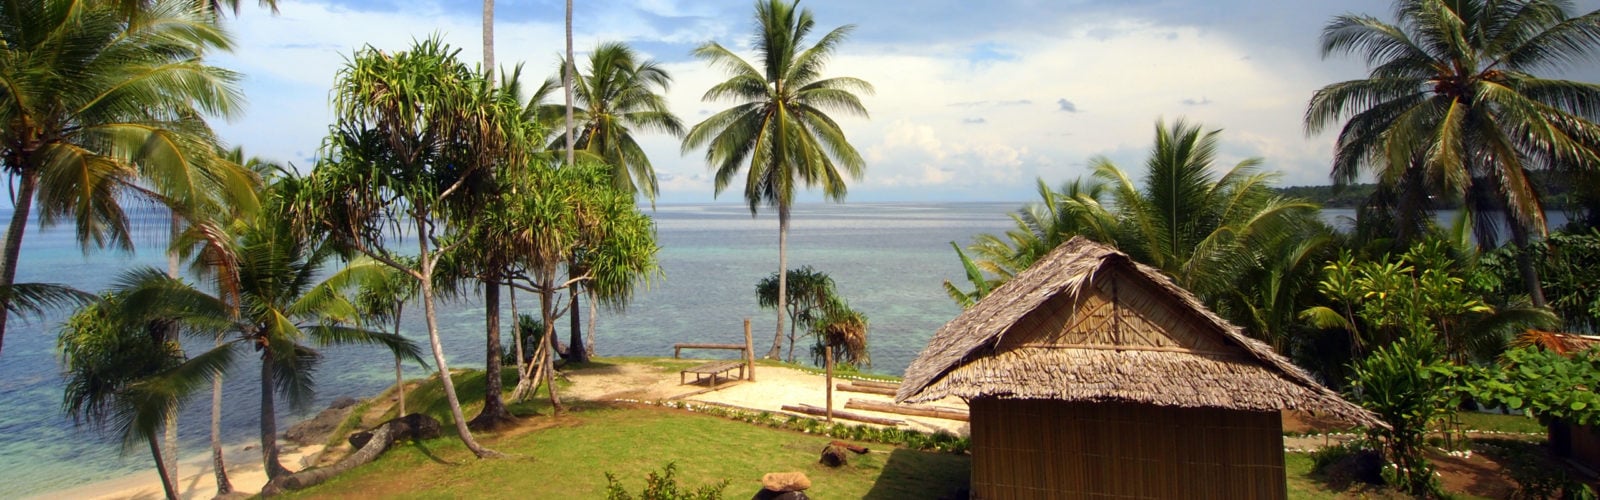 tufi-resort-papua-new-guinea